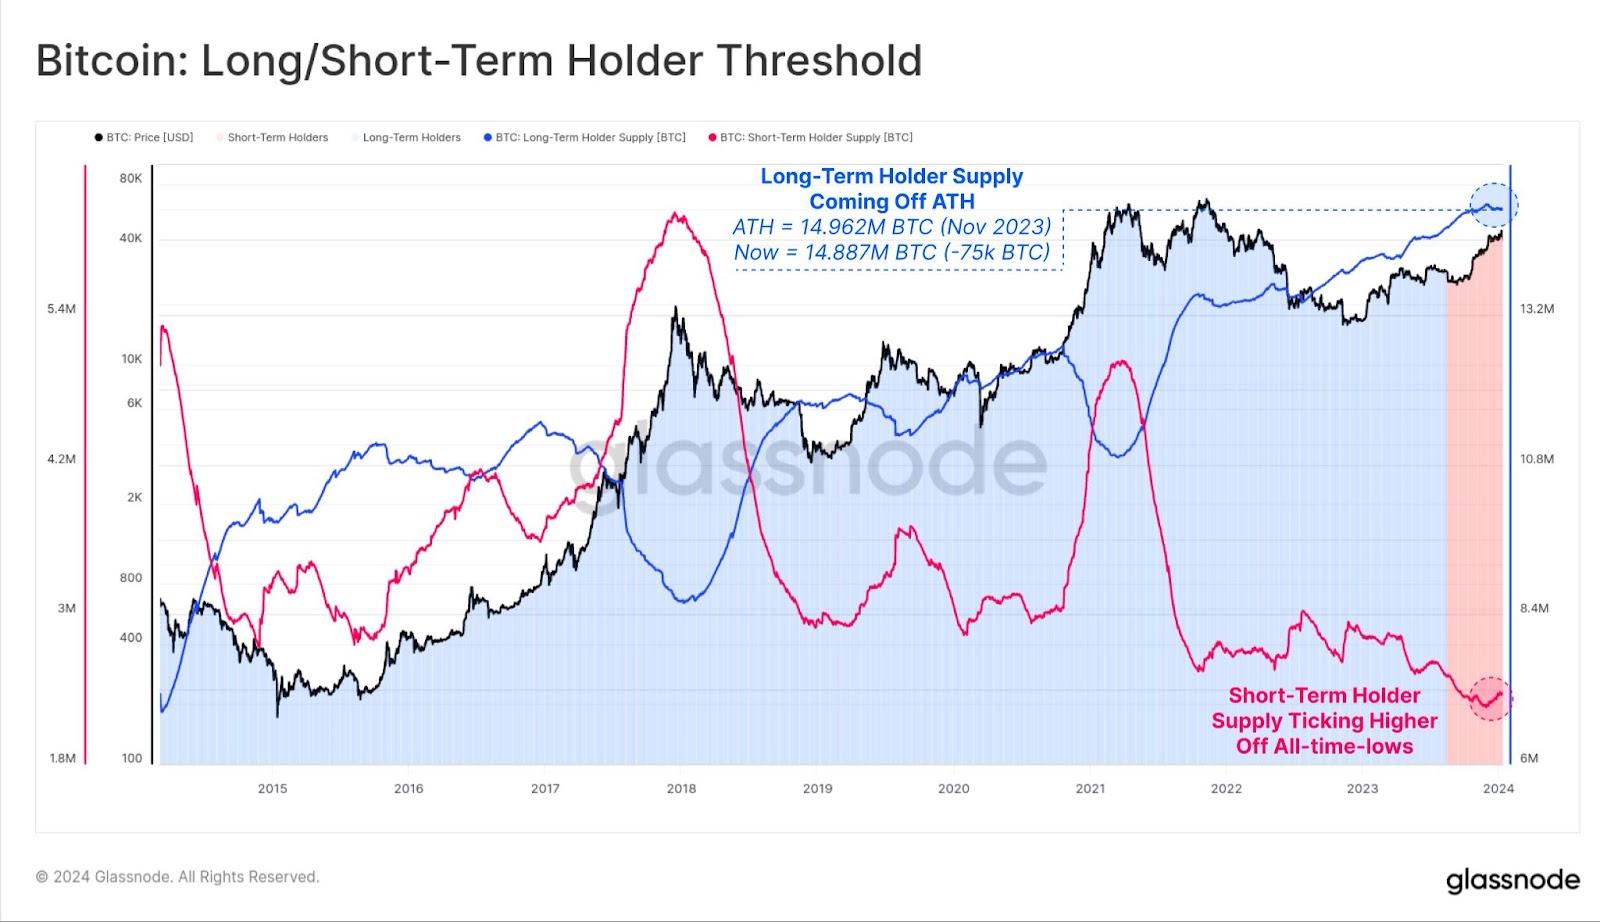 Bitcoin Long/Short term holder